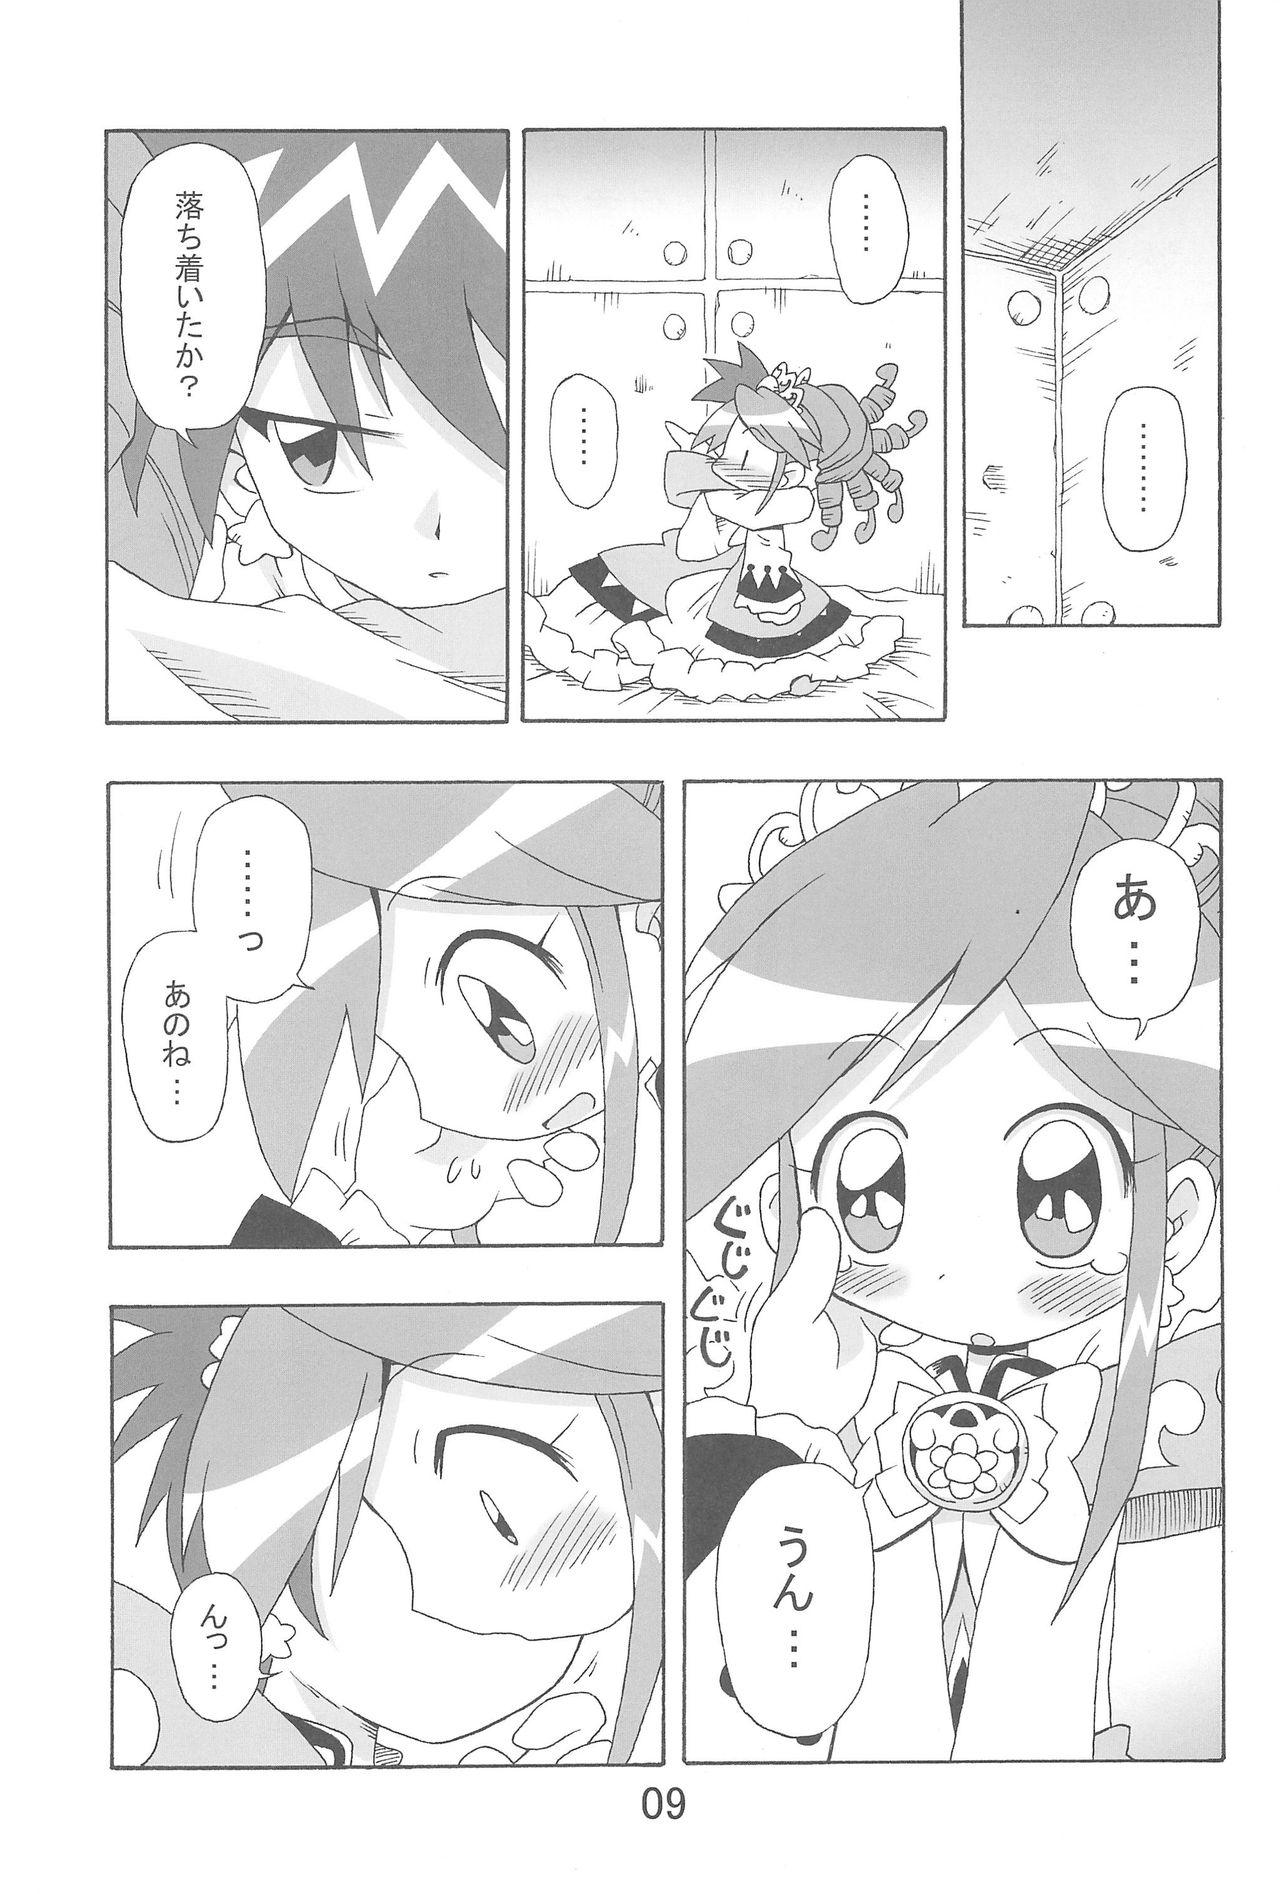 Threesome Ranran Rein Enen Eclipse - Fushigiboshi no futagohime Camwhore - Page 9